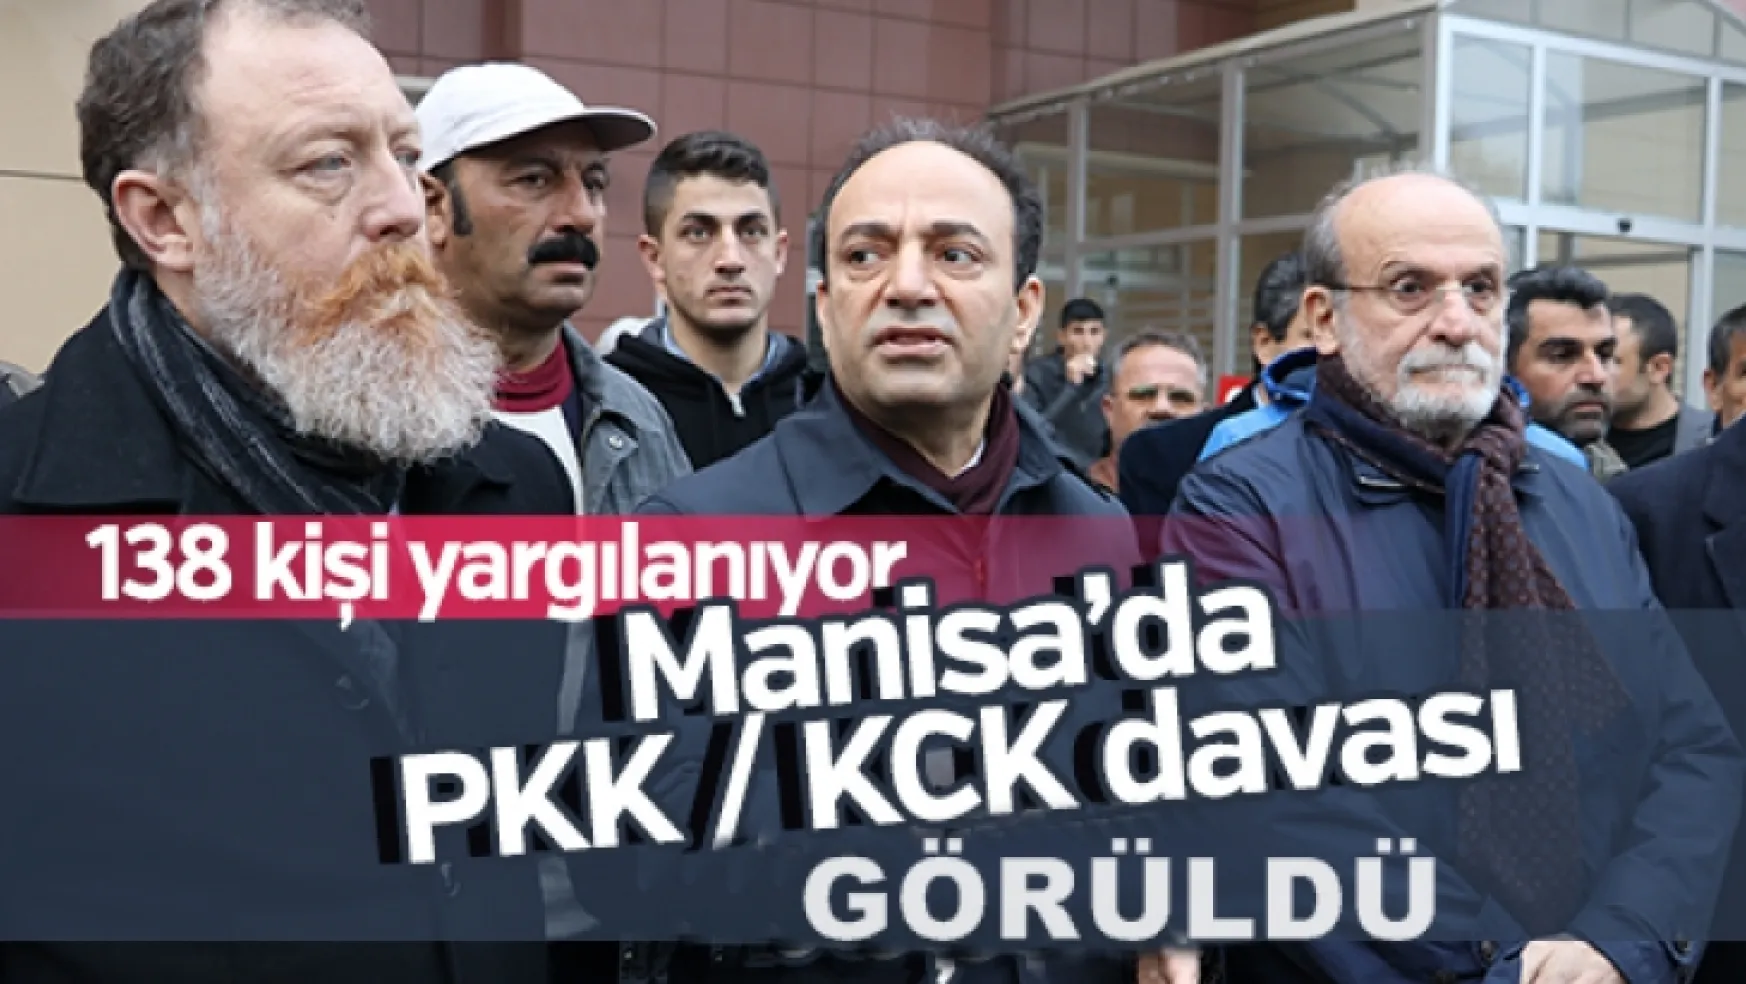 Manisa'da PKK / KCK davası başladı (Video)